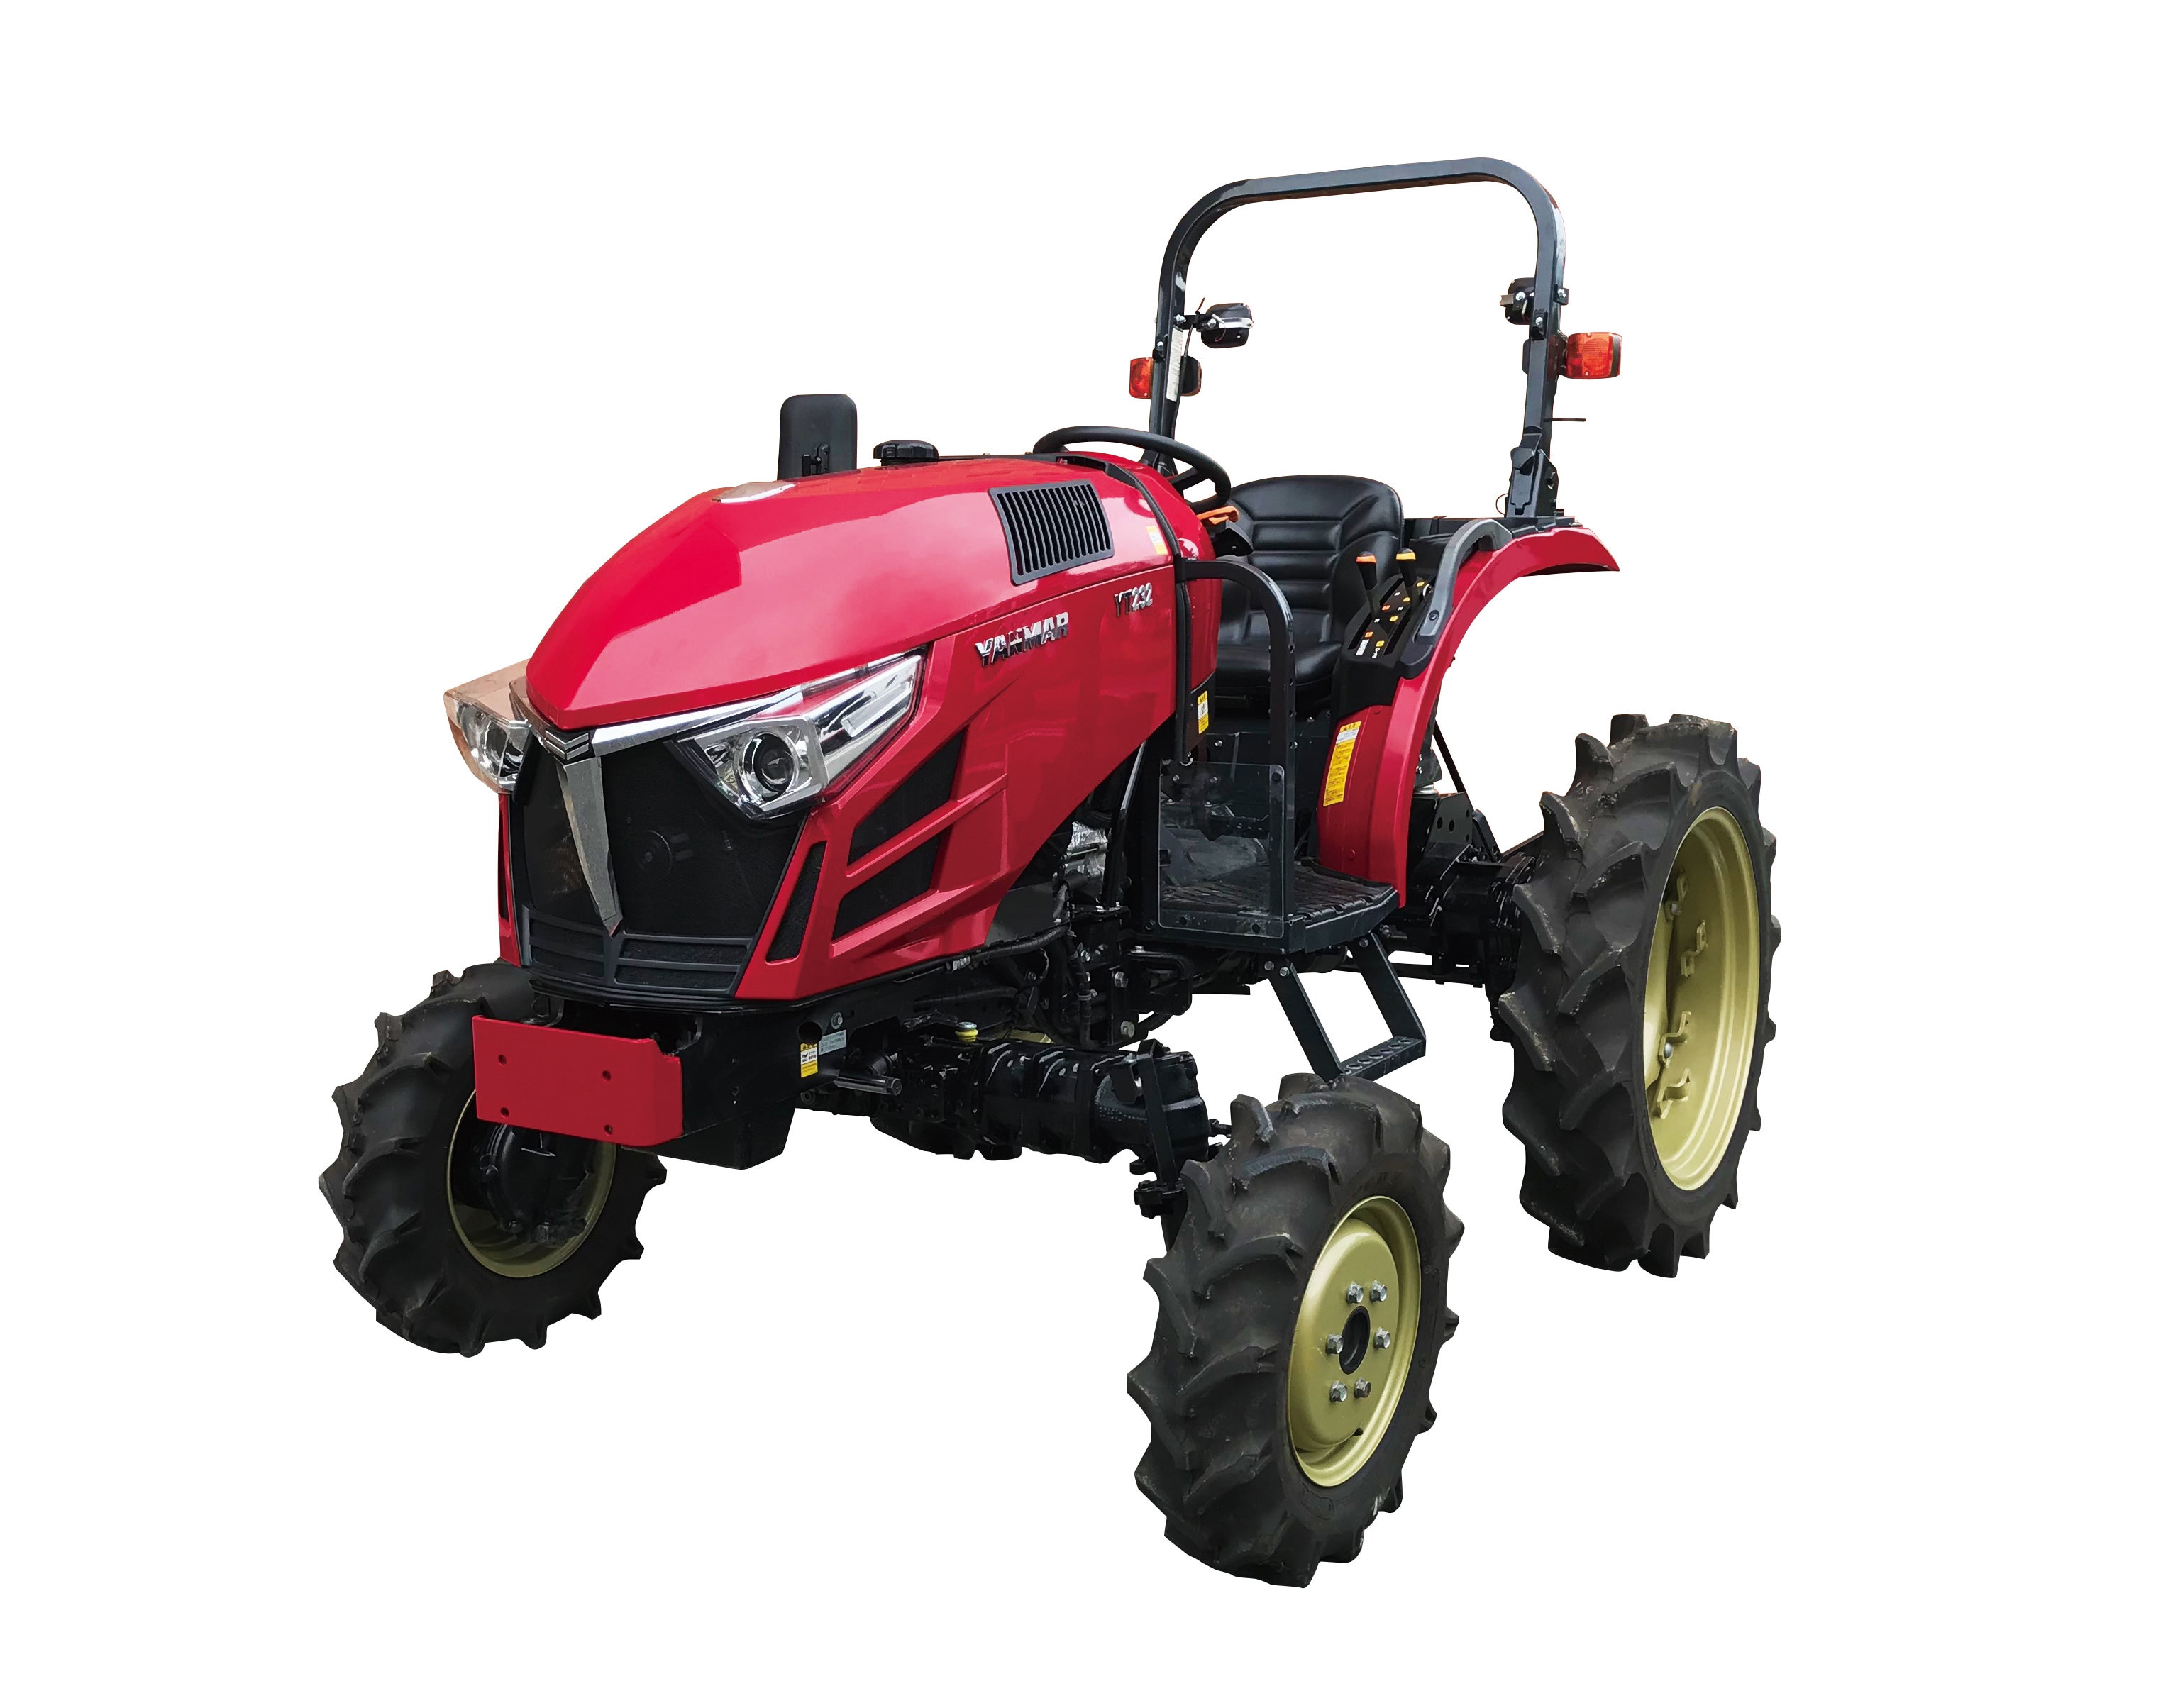 畑作管理作業に最適なトラクター Yt2シリーズ ハイクリアランス仕様 を発売 19年 ニュース 農業 ヤンマー